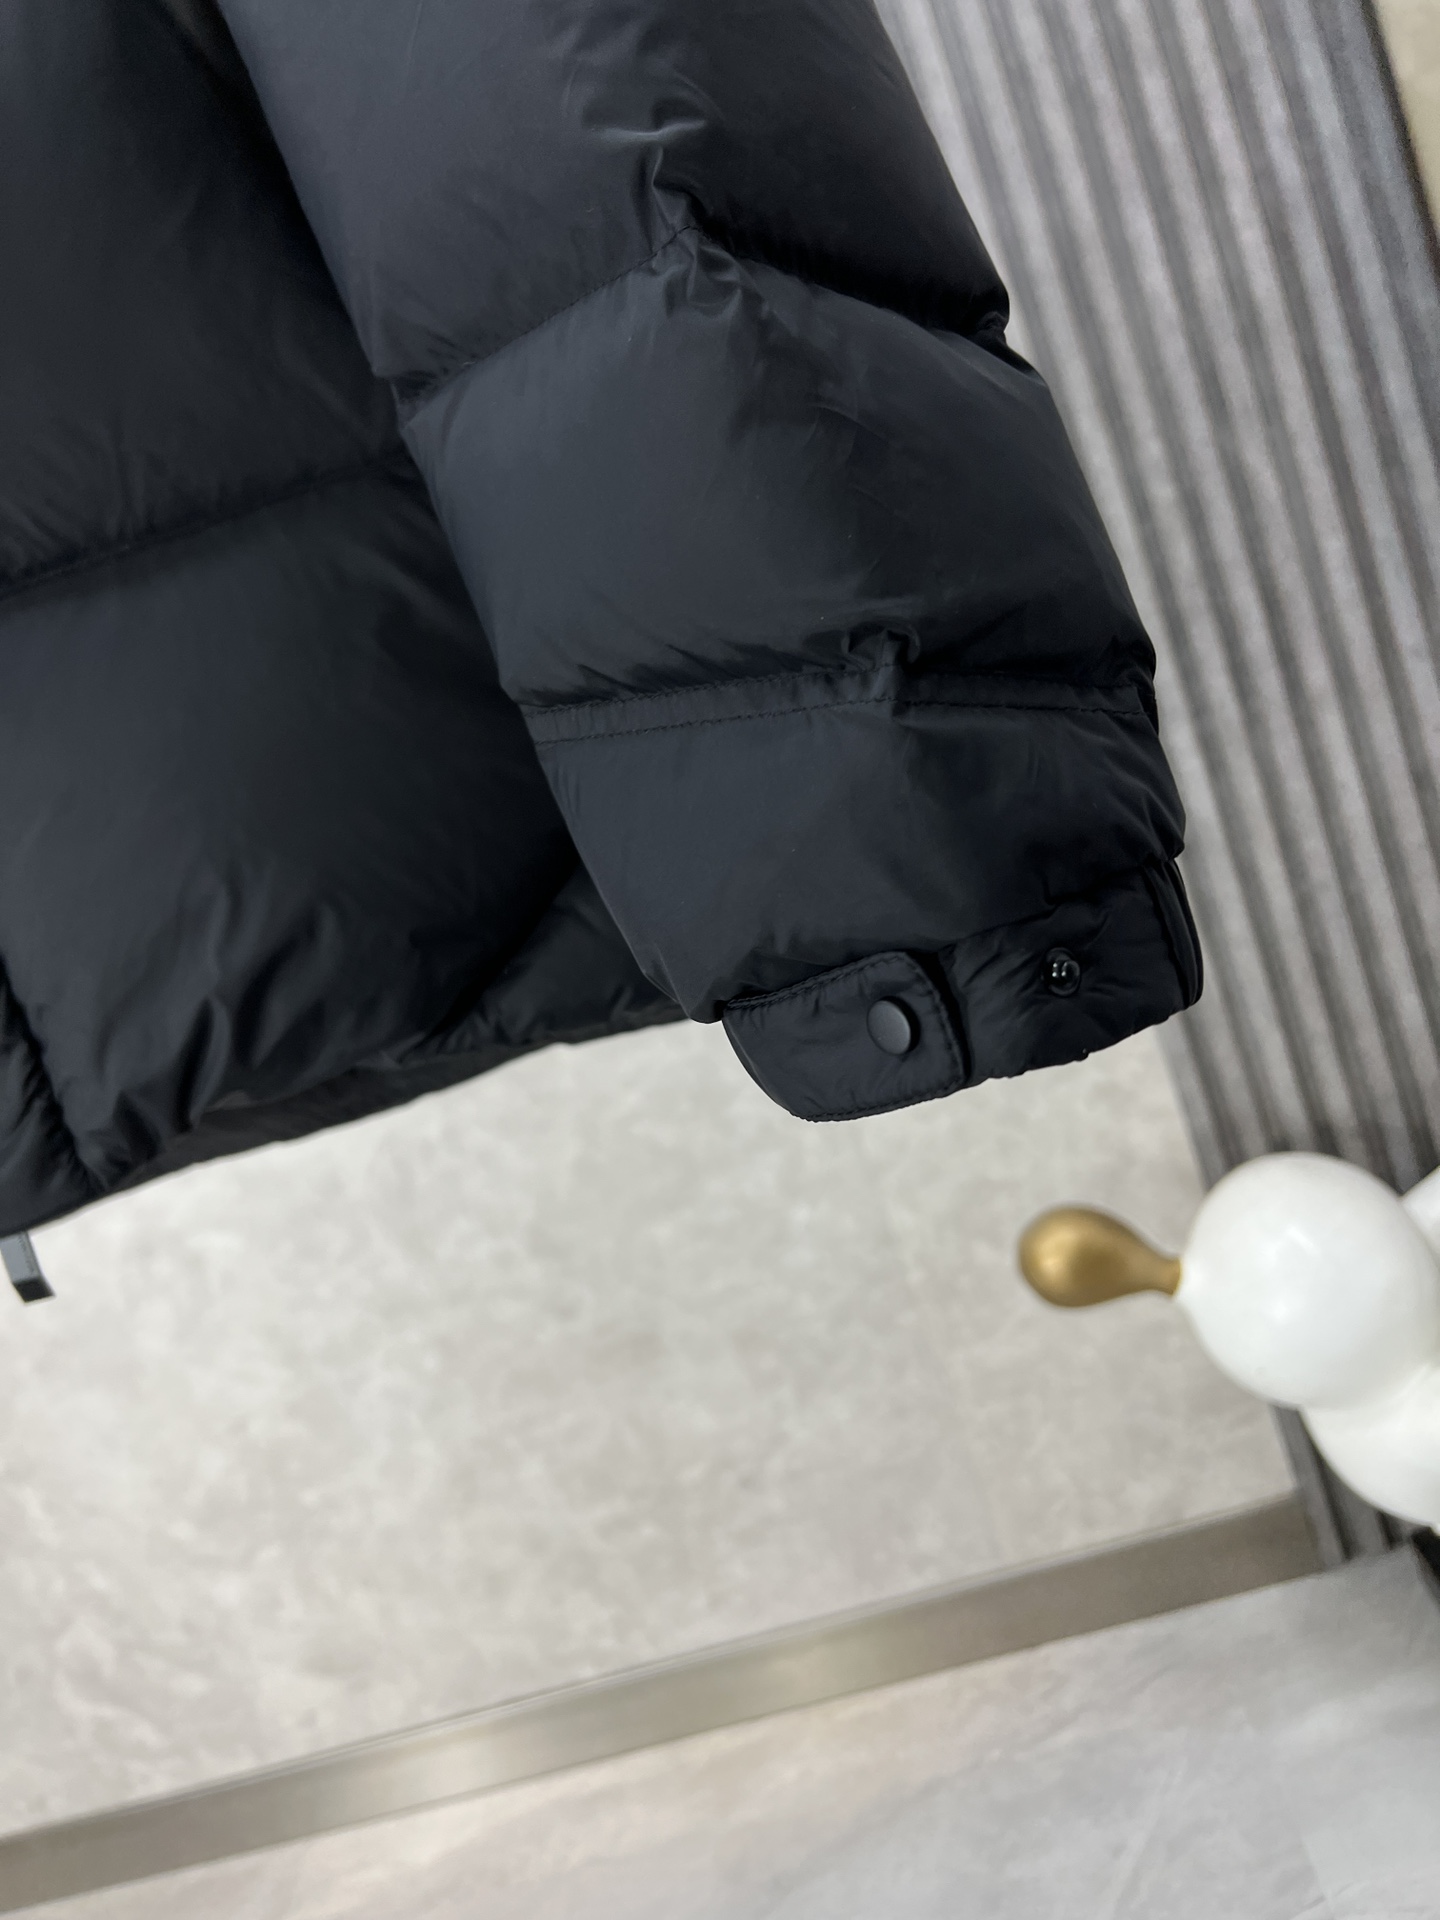 Moncler蒙口秋冬新品Jarama男士短款羽绒外套Jarama短款羽绒夹克是一款个性单品专为注重功能